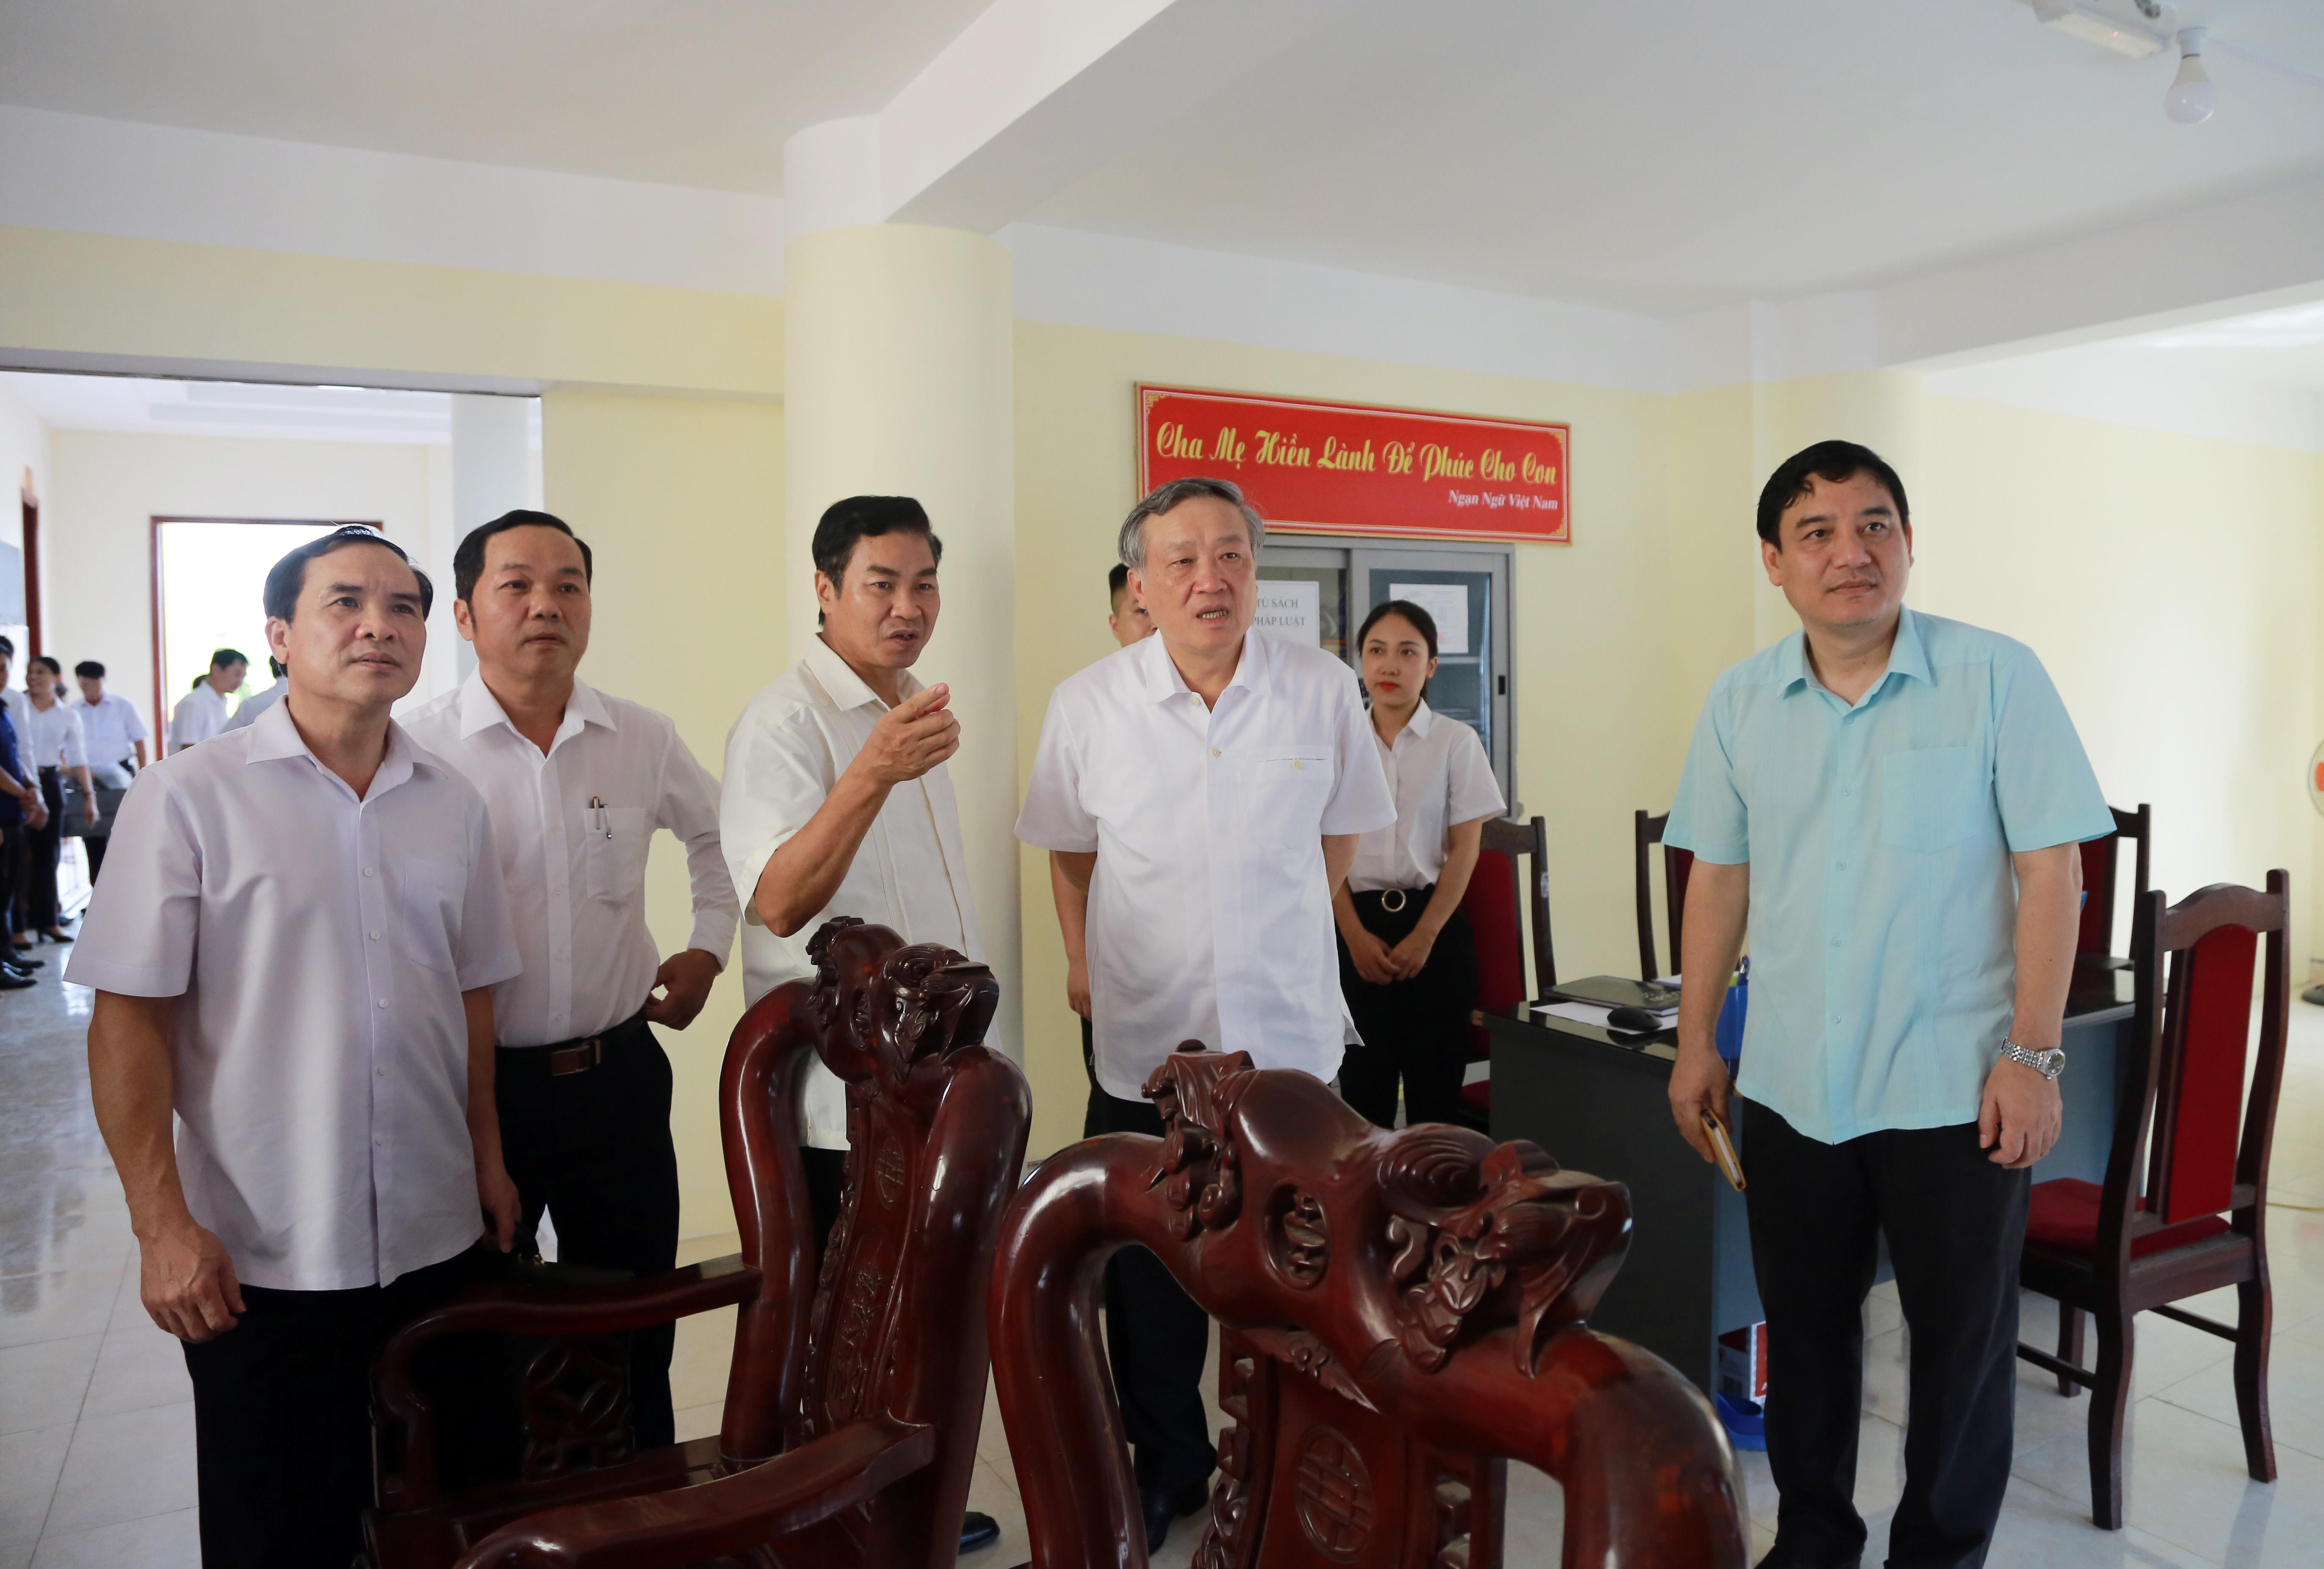 Chánh án Tòa án nhân dân tối cao Nguyễn Hòa Bình trao đổi với lãnh đạo Tòa án nhân dân tỉnh Nghệ An. Ảnh: An Quỳnh.